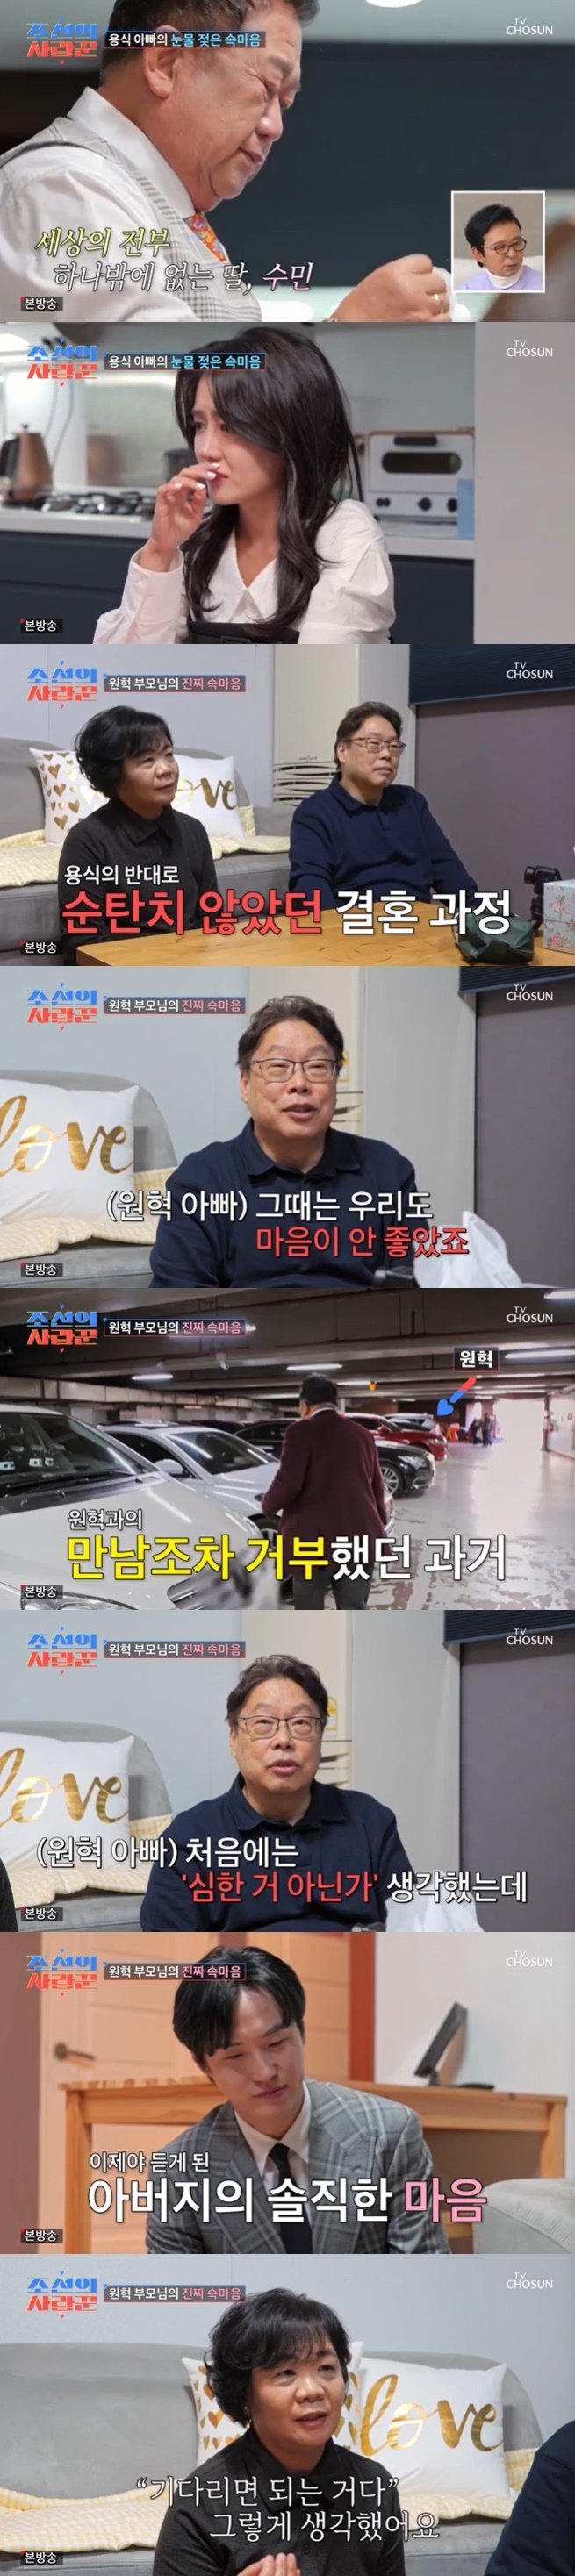 '수민♥' 원혁 부모 "이용식 결혼 반대, 지인들도 걱정해" [RE:TV]